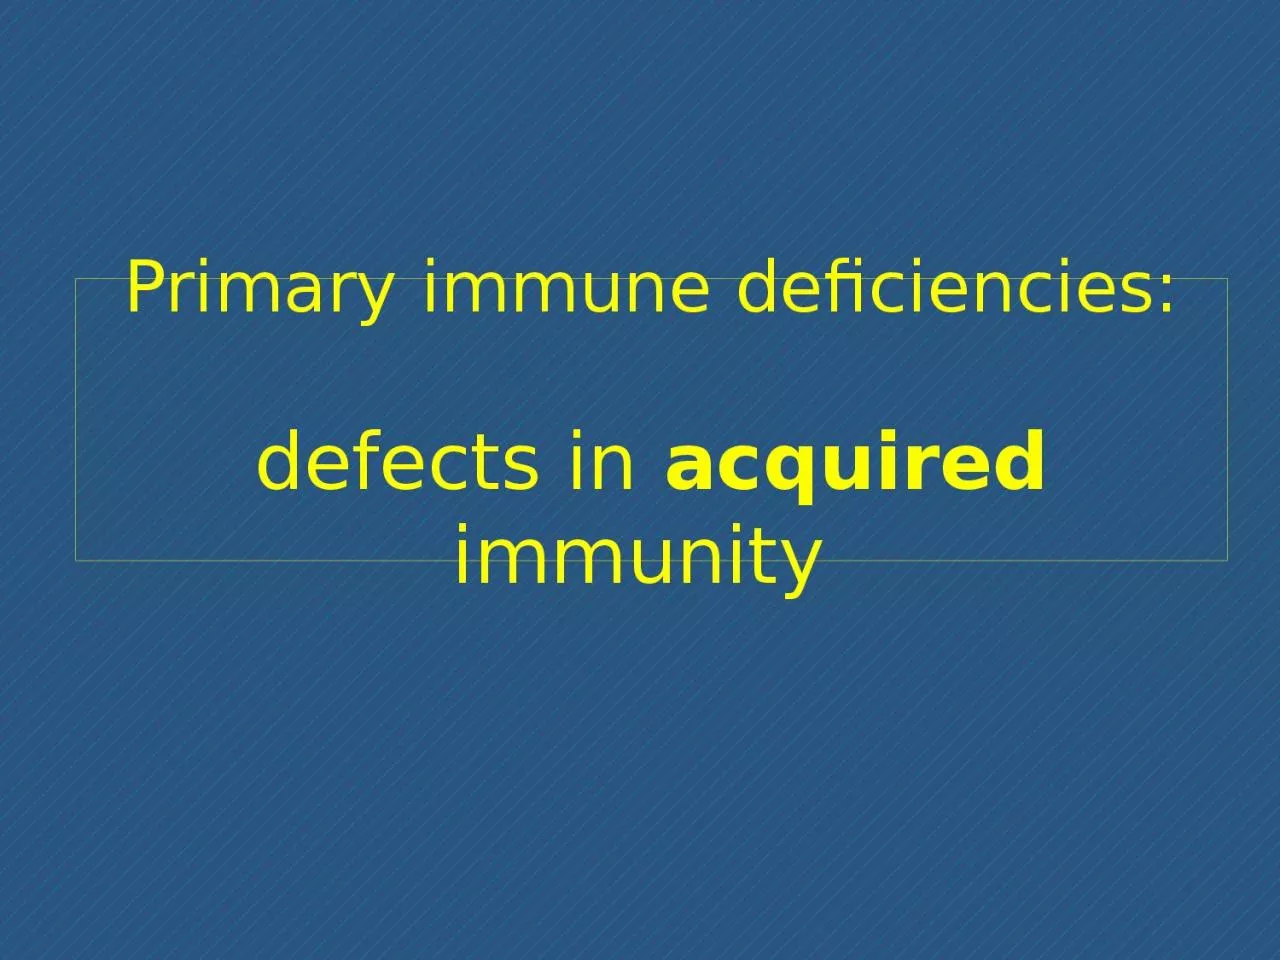 Primary immune deficiencies: